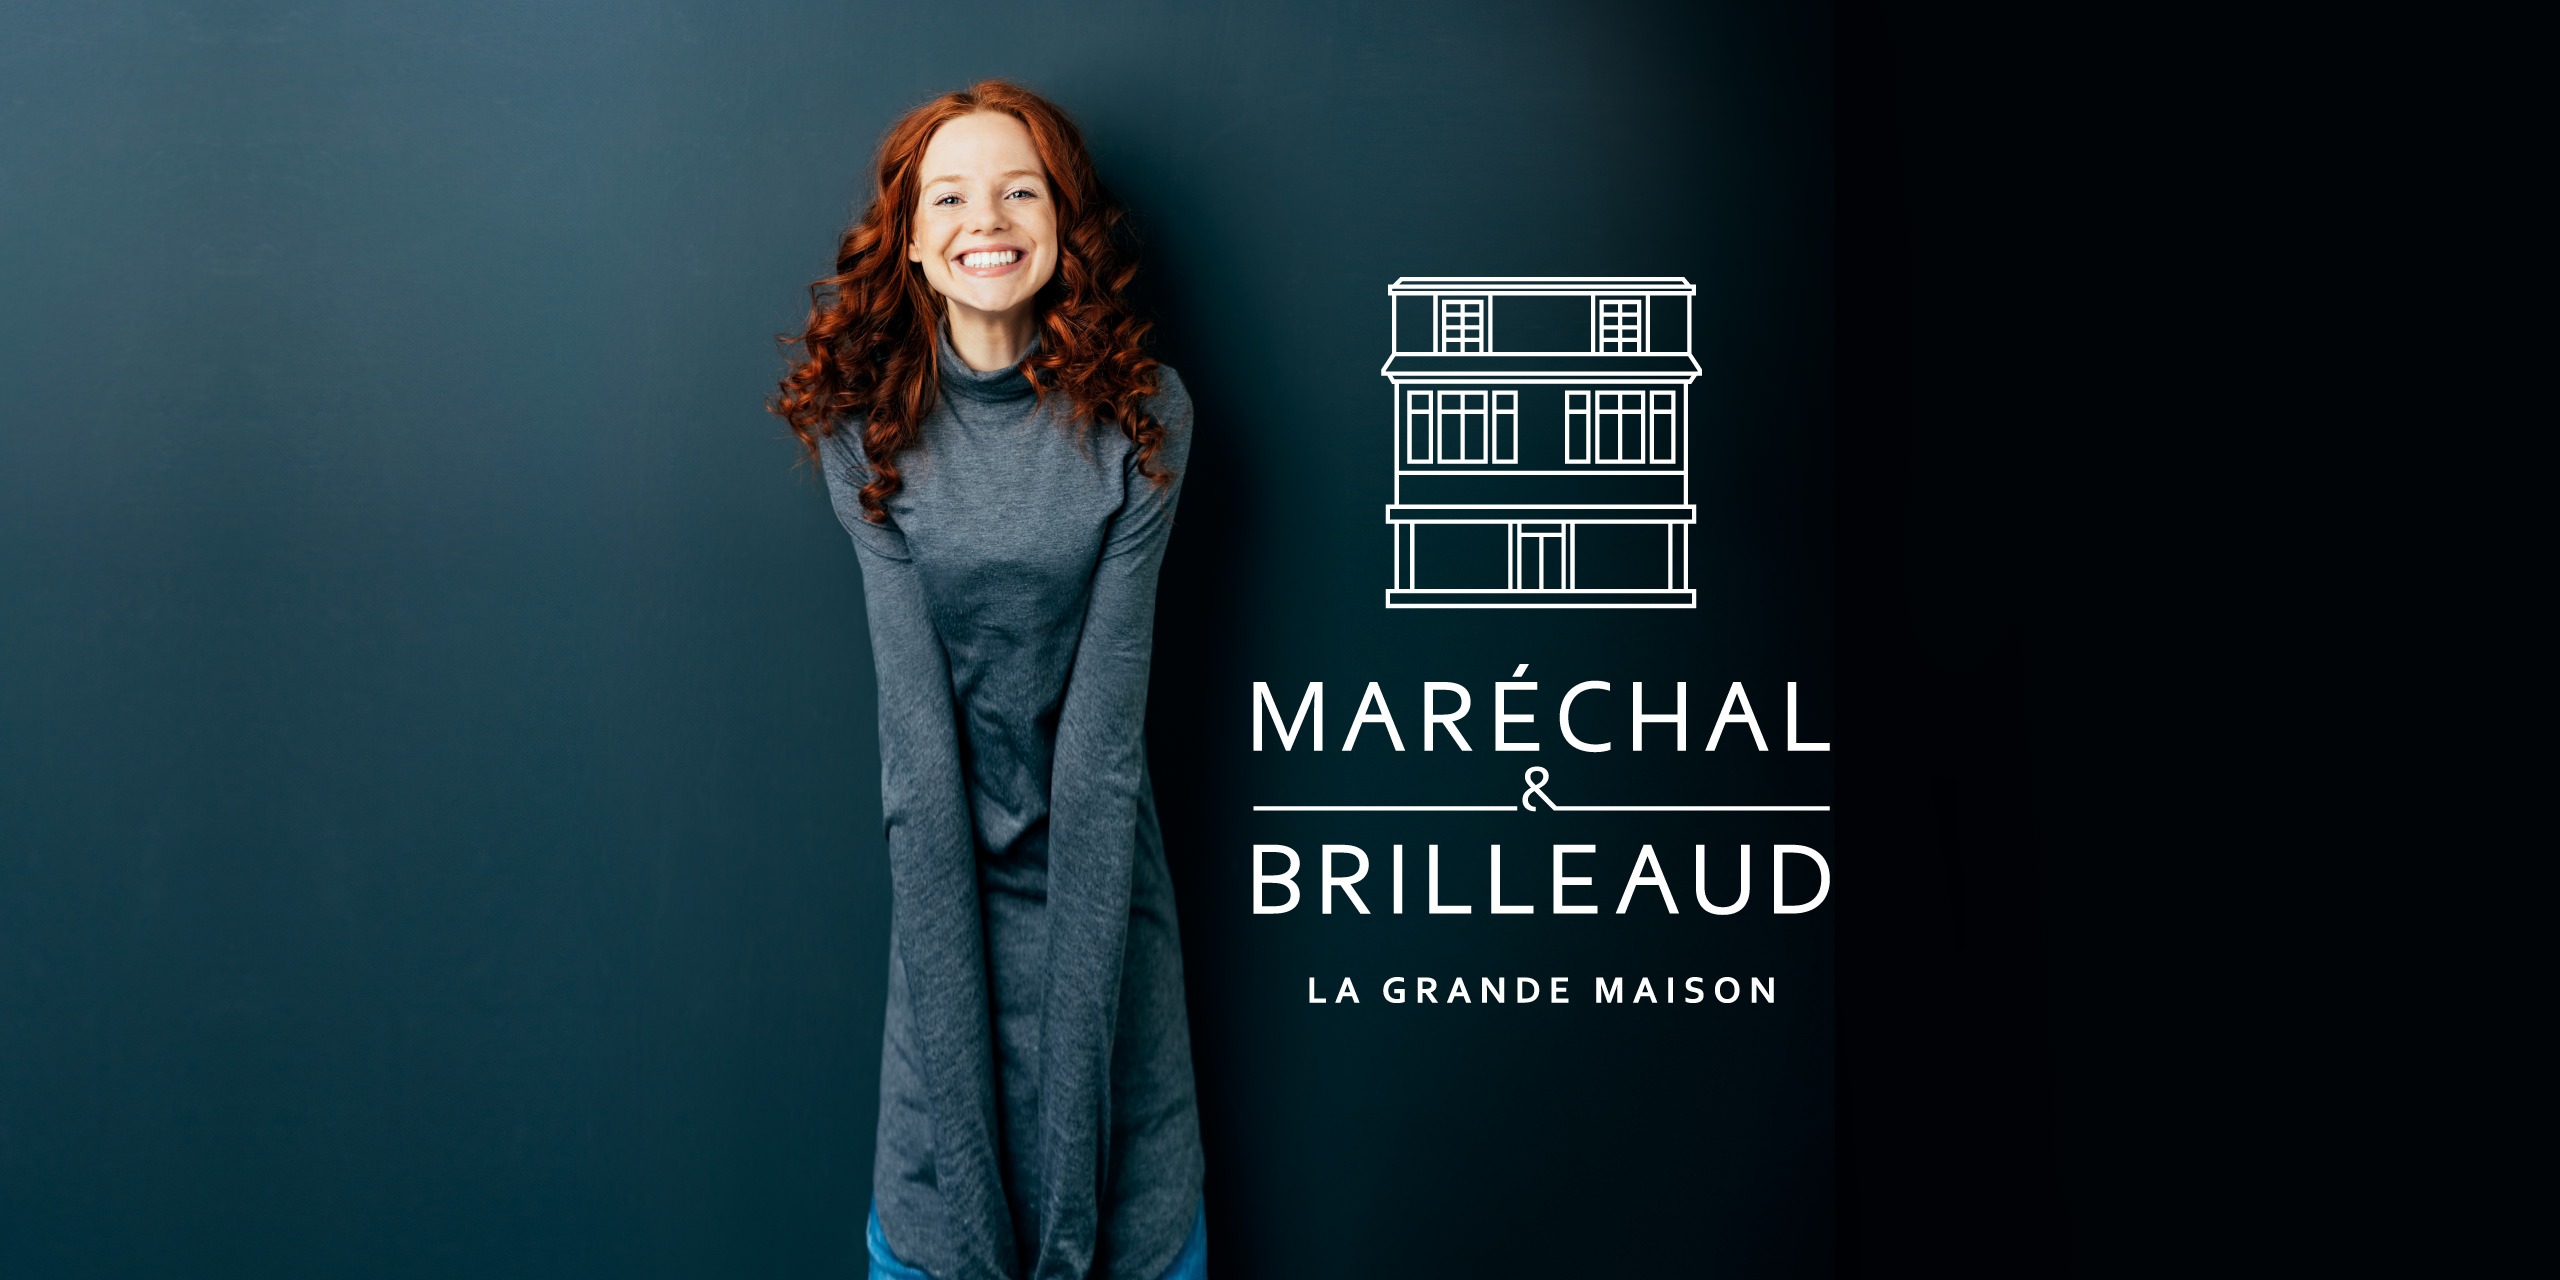 marechal-et-brilleaud-visuel-des-ronds-dans-leau